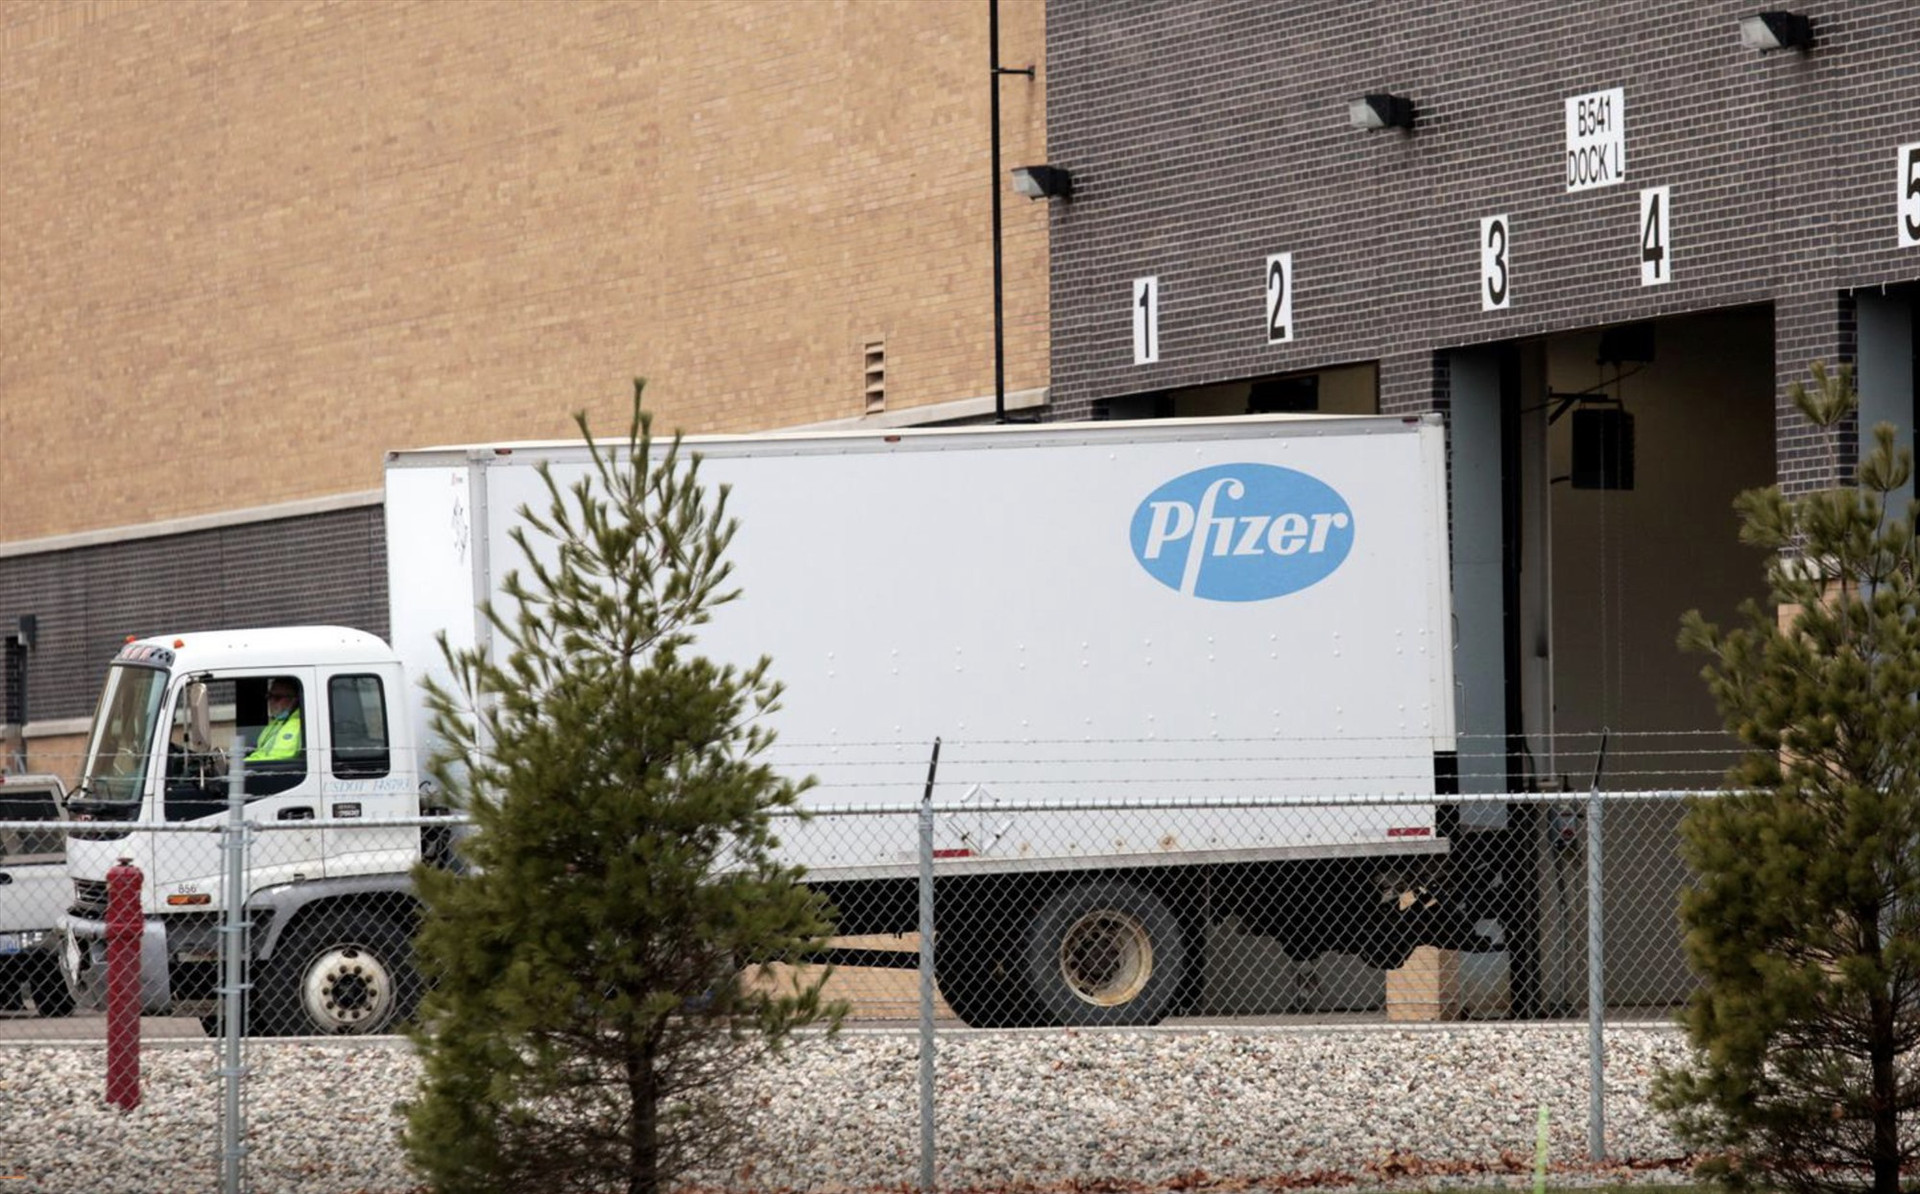 Một trong những chiếc xe tải đầu tiên vận chuyển vắc xin Covid-19 của Pfizer rời khỏi nhà máy để lên máy bay, đến các địa điểm phân phối trên toàn nước Mỹ. Ảnh:Reuters